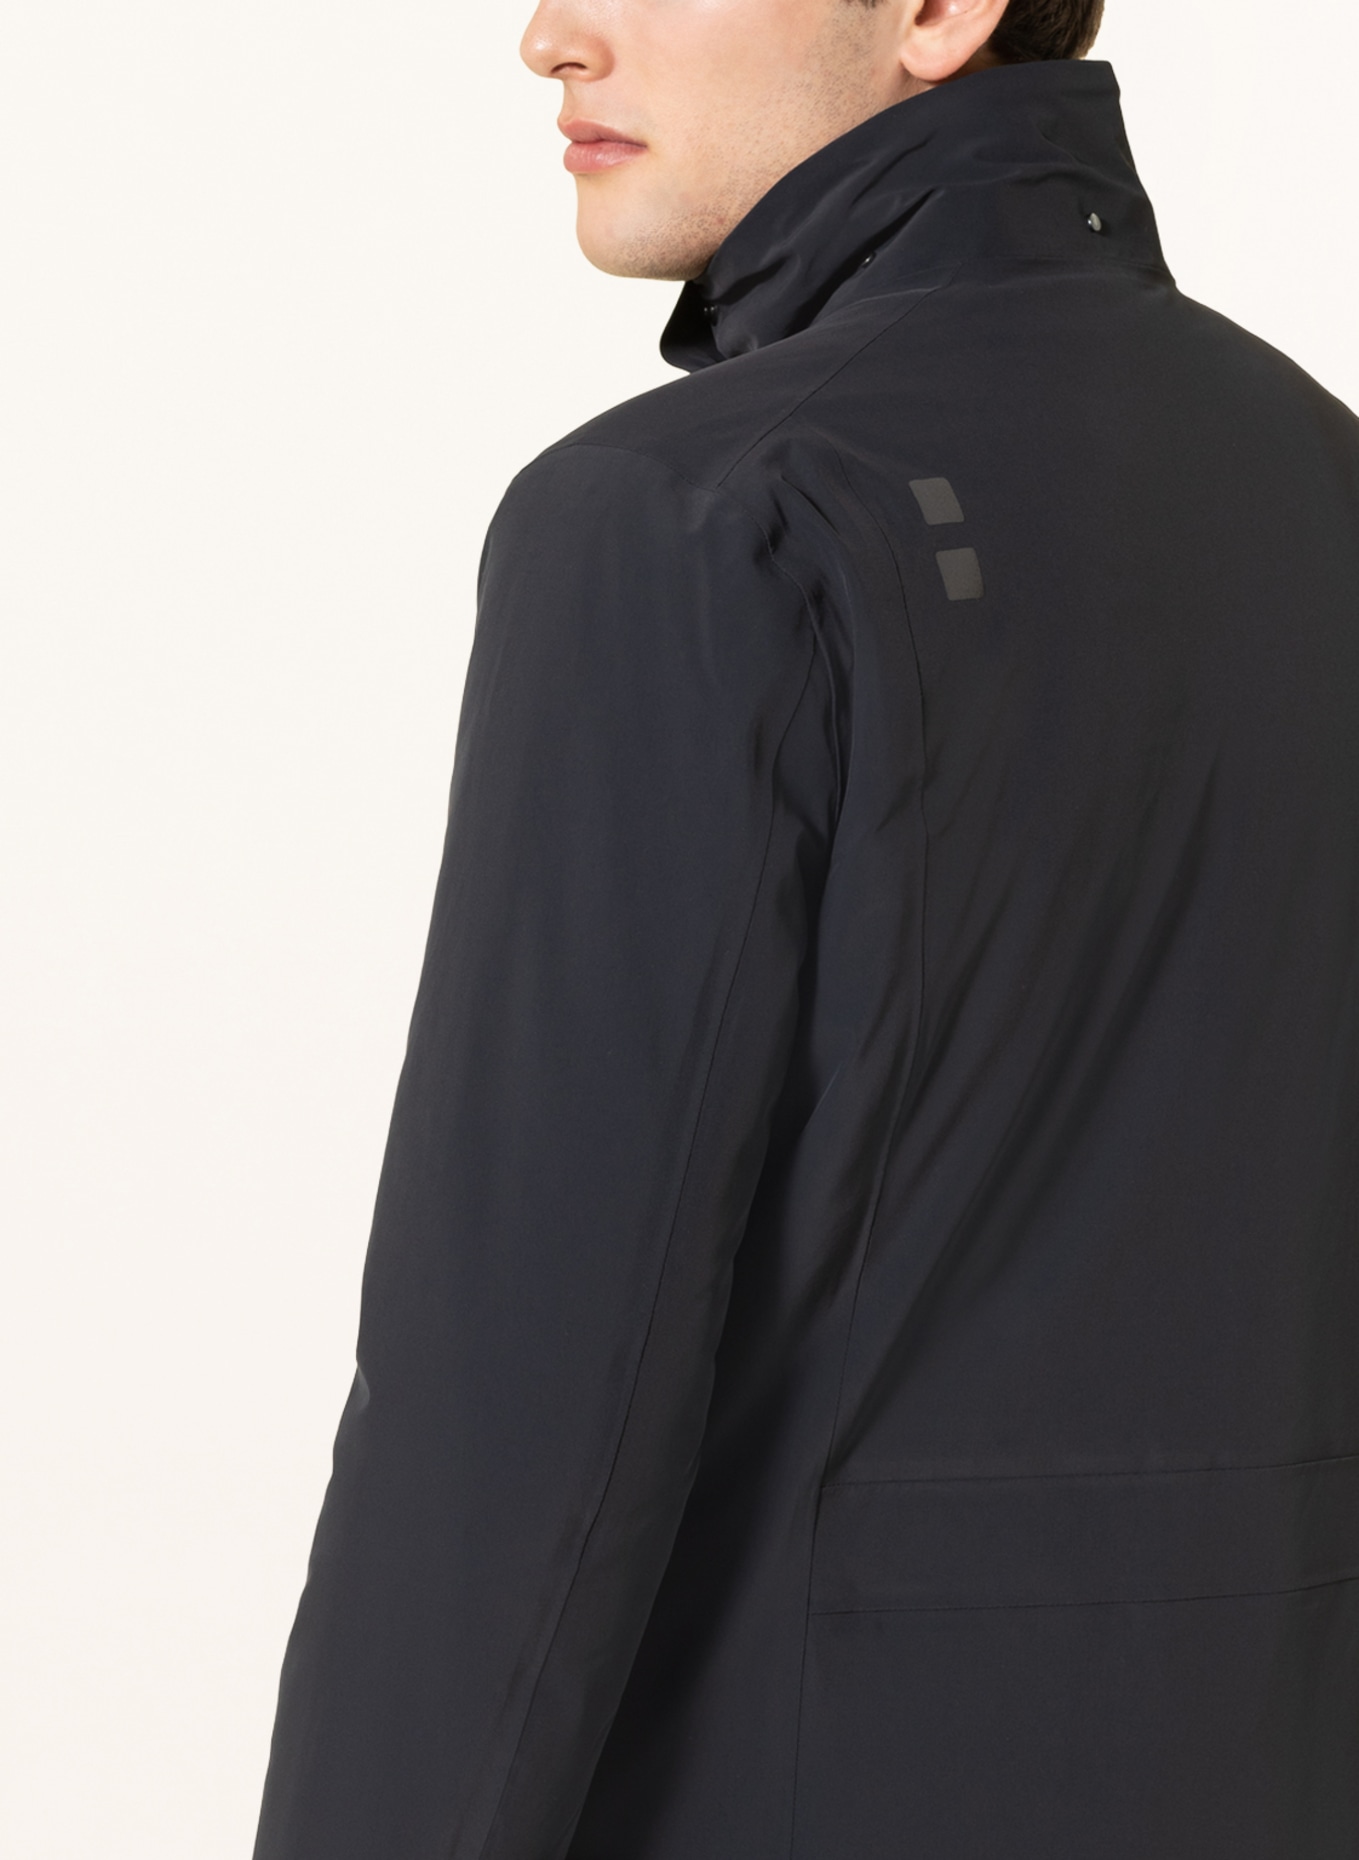 UBR Parka REGULATOR™ with detachable hood, Color: BLACK (Image 6)